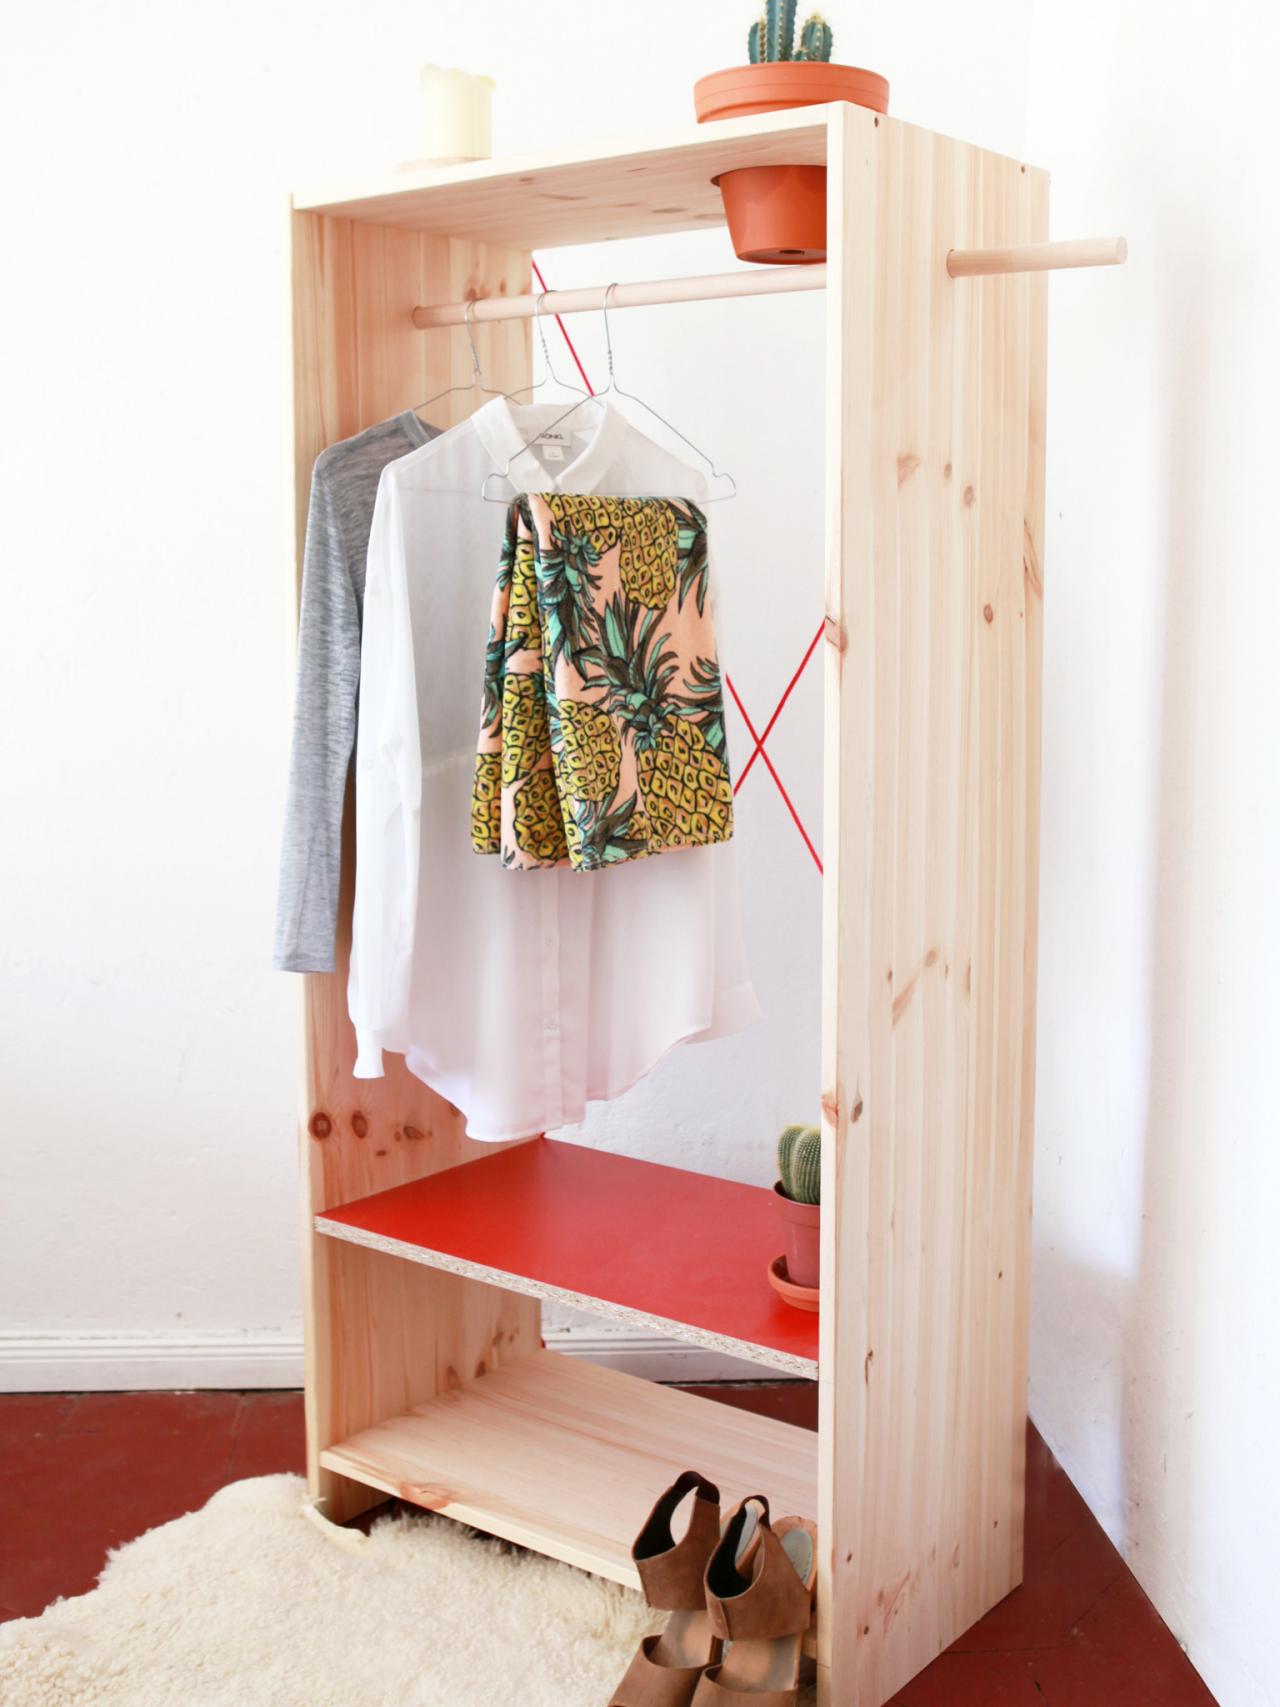 DIY Clothes Racks and Portable Closet Storage Ideas